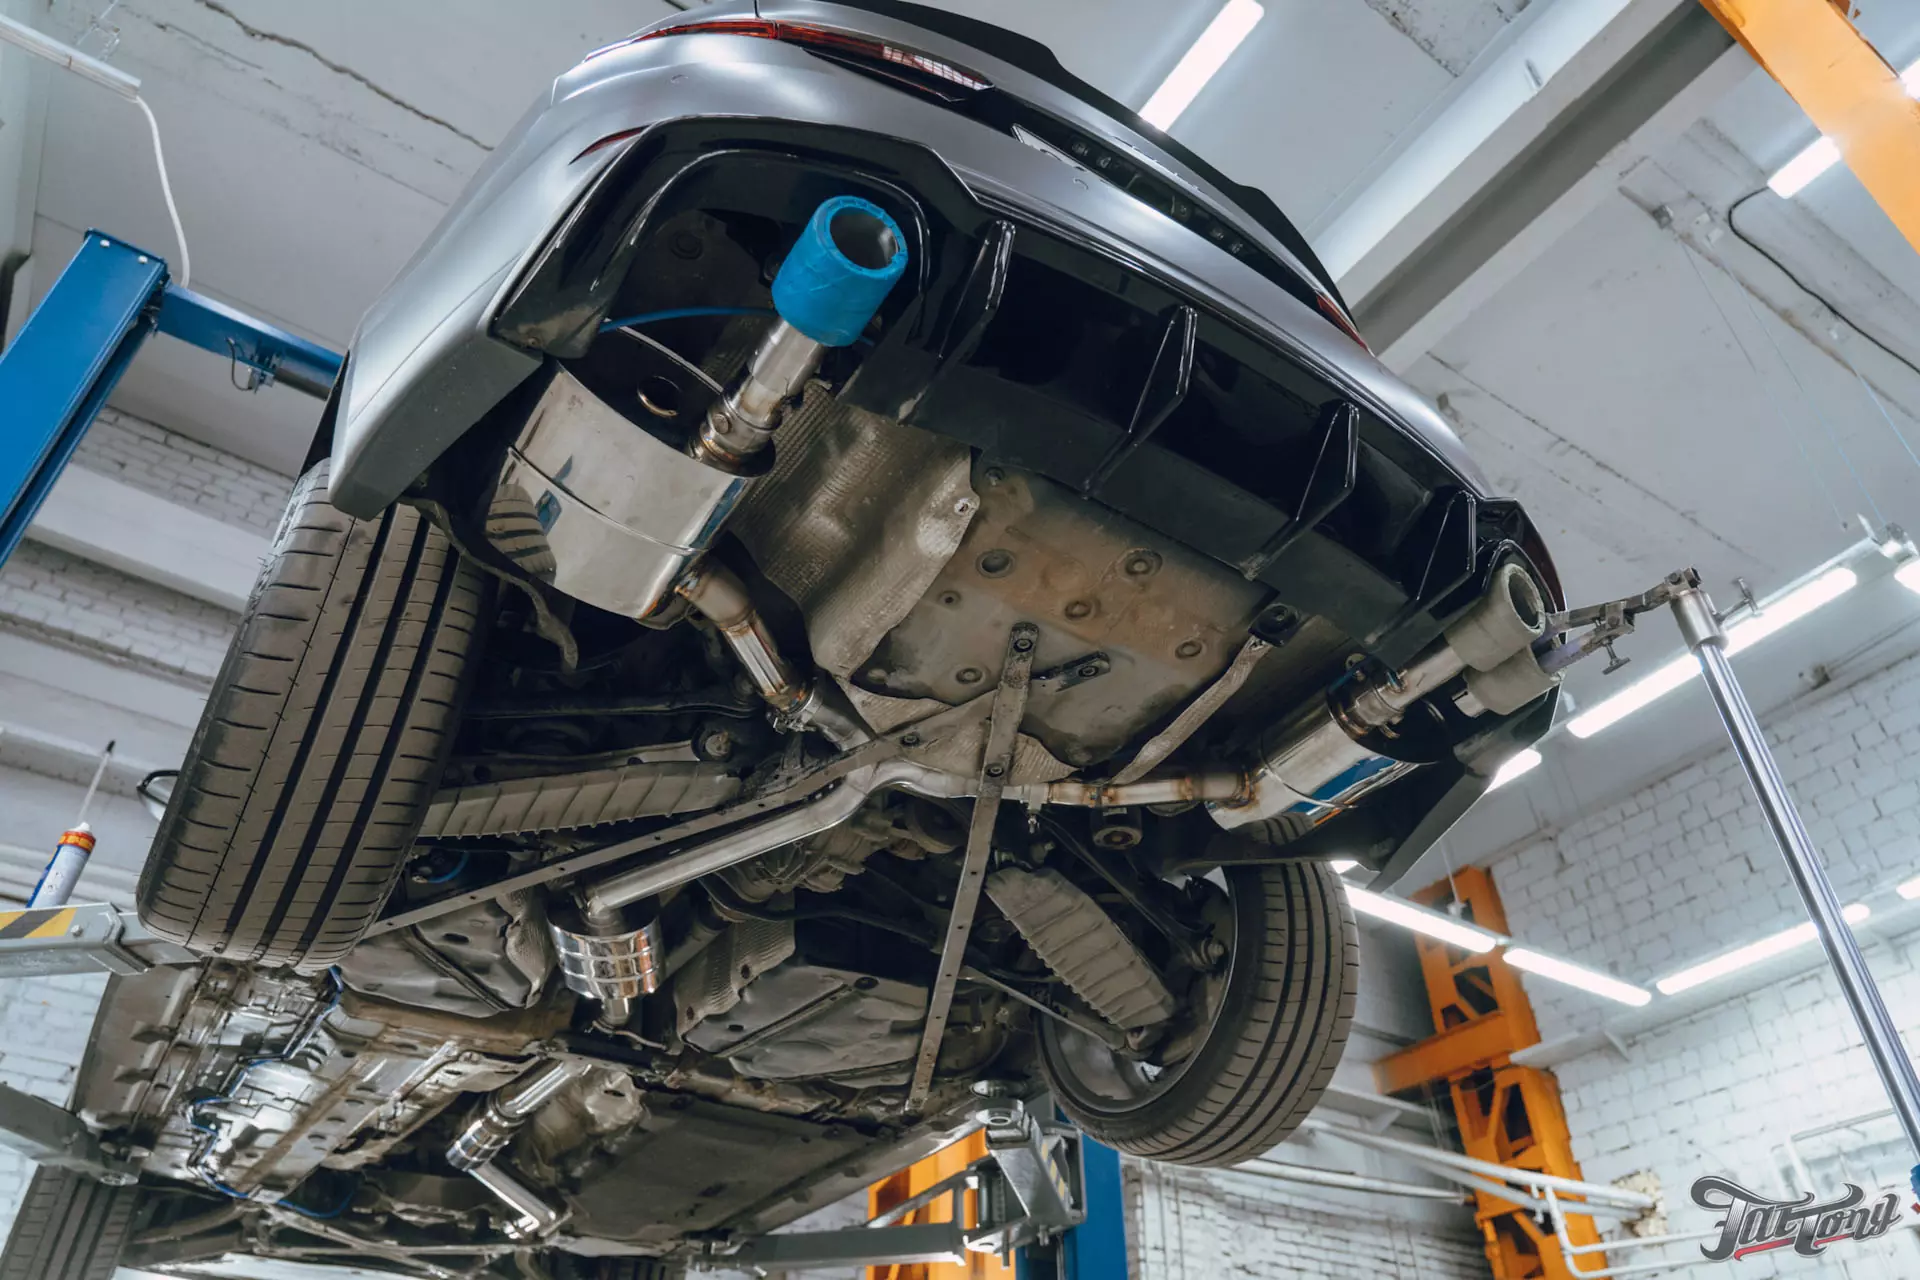 Audi A5. Постройка выхлопной системы в двумя режимами громкости и управлением со штатной мультимедиа. Перешив подушки руля. Химчистка подкапотного пространства и салона